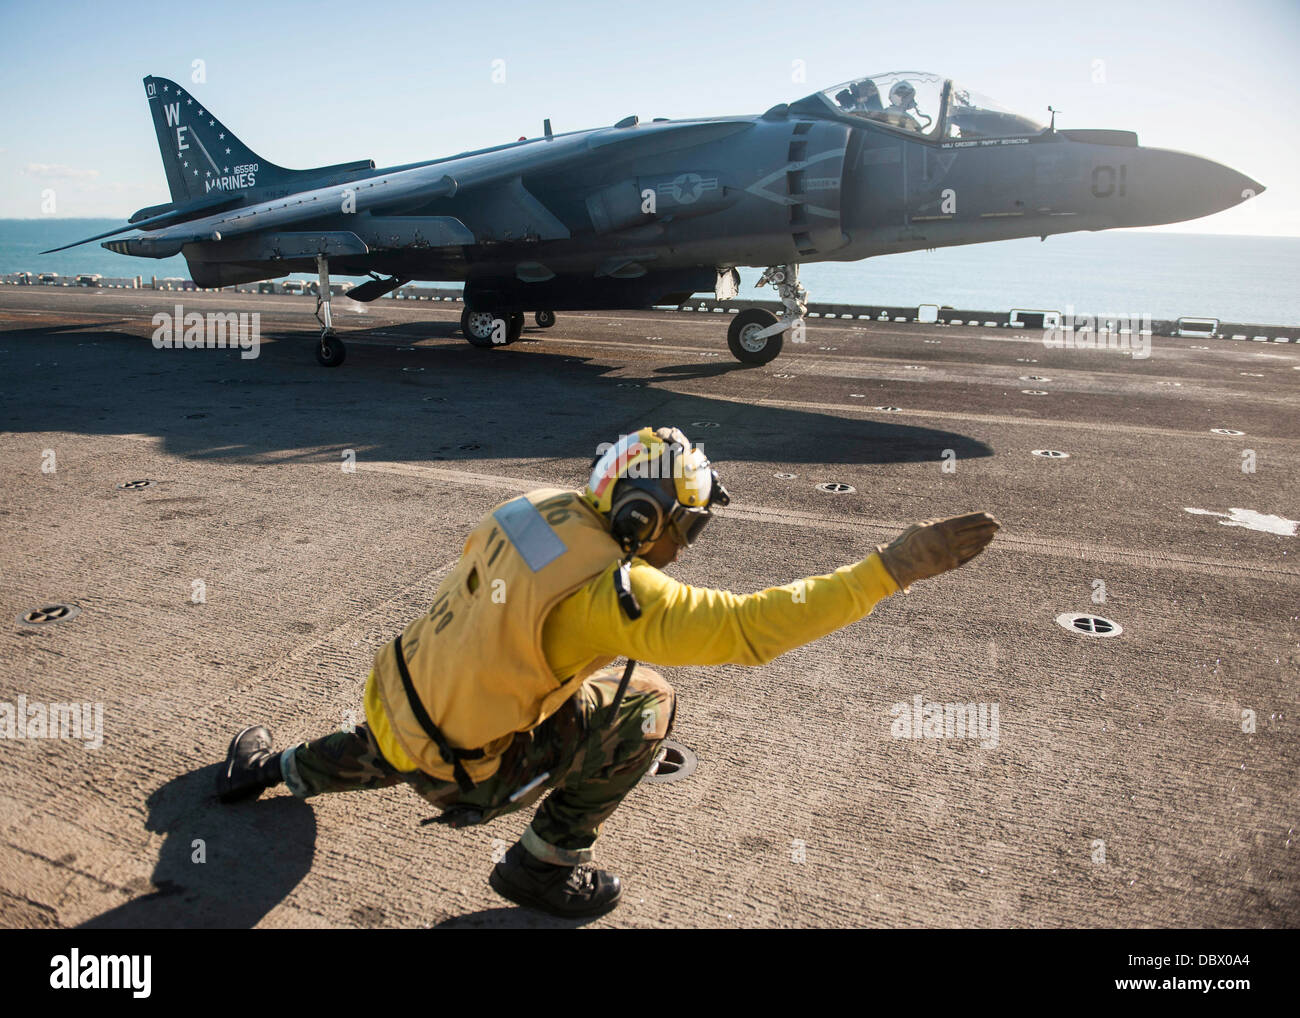 L'Aviation de l'US Navy un maître de Manœuvre signale le pilote d'un Harrier AV-8B fighter jet qu'il est autorisé à lancer depuis la cabine de pilotage du navire d'assaut amphibie USS Bonhomme Richard le 4 août 2013 dans la mer d'Oman. Banque D'Images